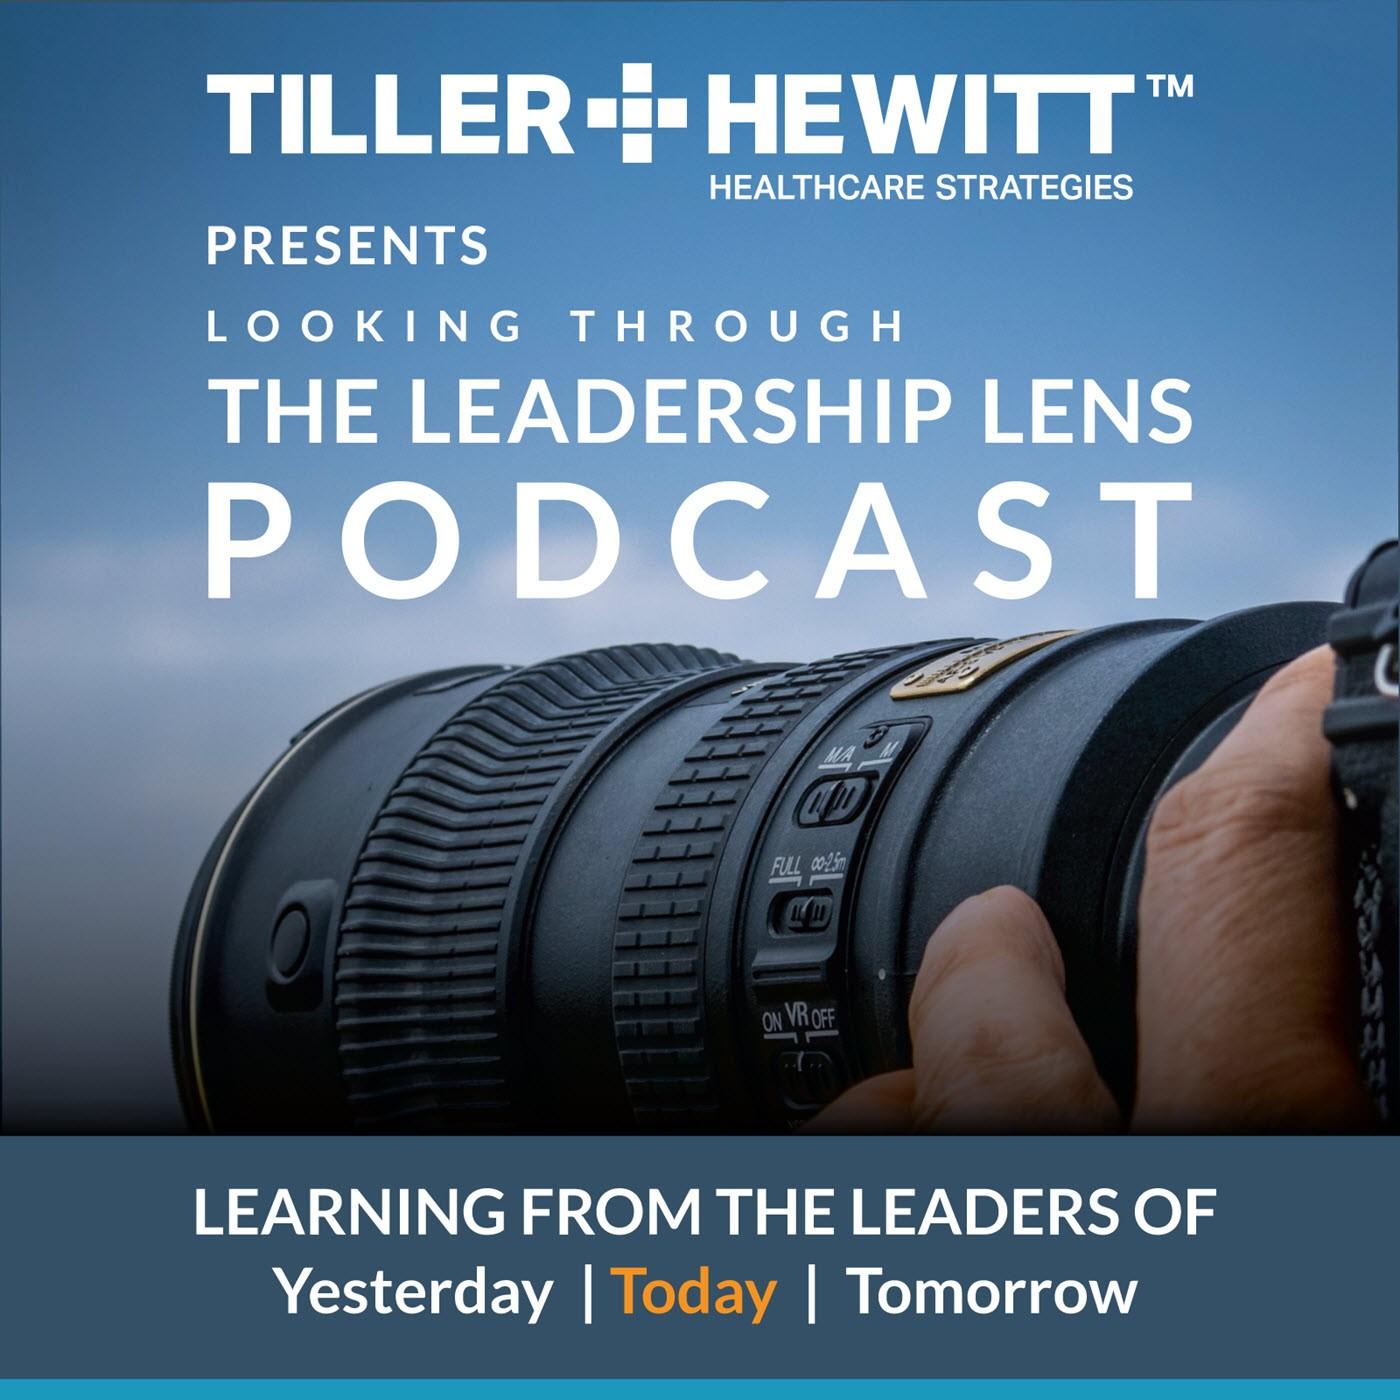 The Leadership Lens Podcast - Tiller-Hewitt